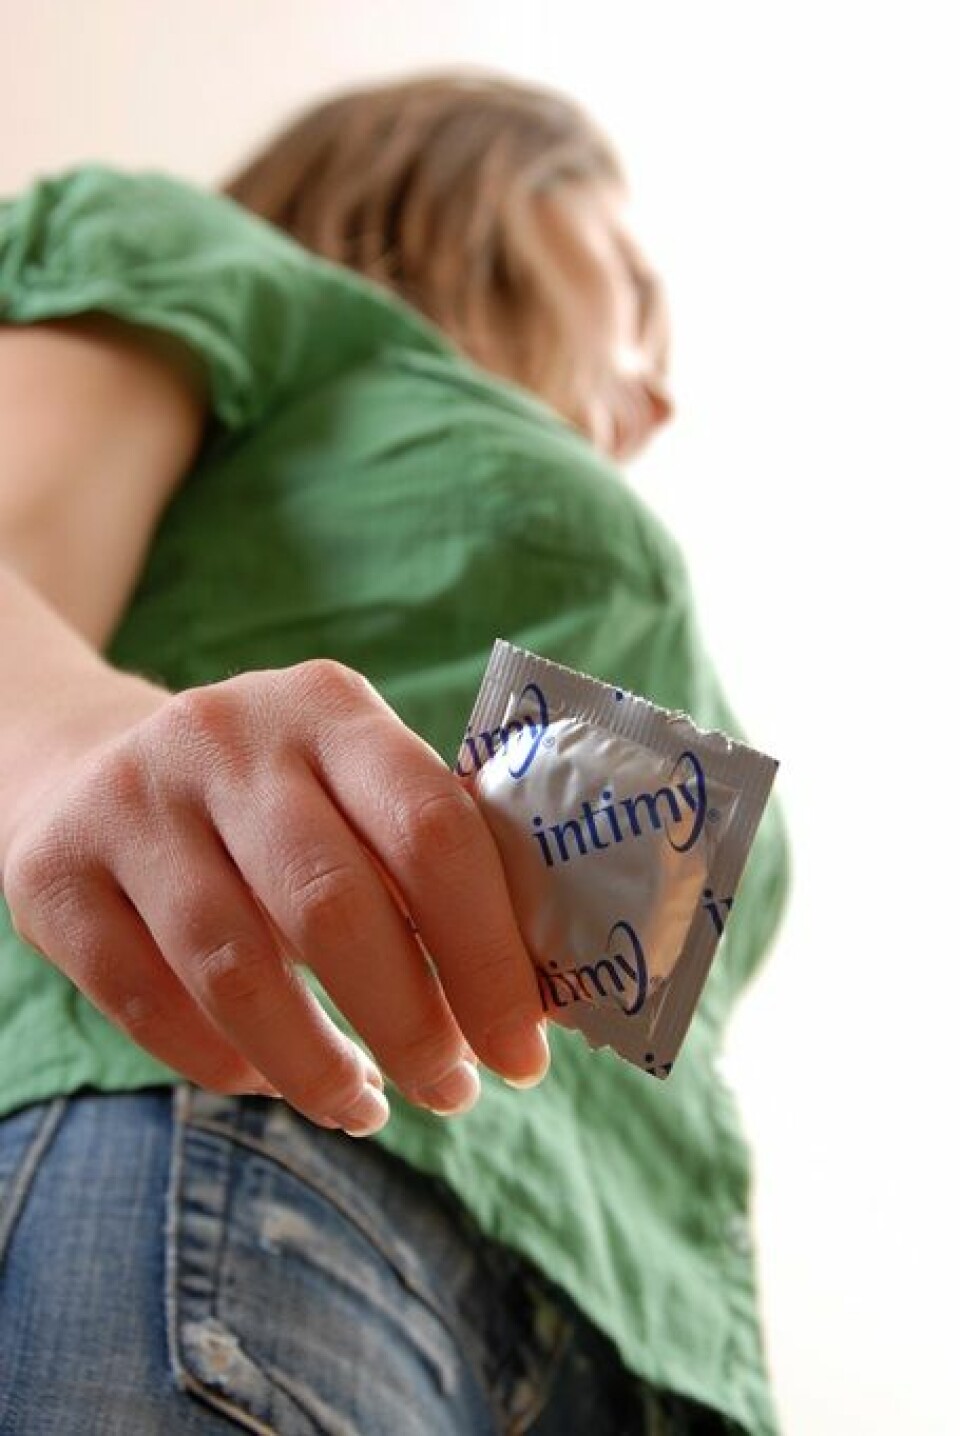 Jenter har fortsatt sex med kondom, selv om de har fått en vaksine som forebygger smitte med HPV-viruset, som overføres seksuelt. (Foto: Microstock)